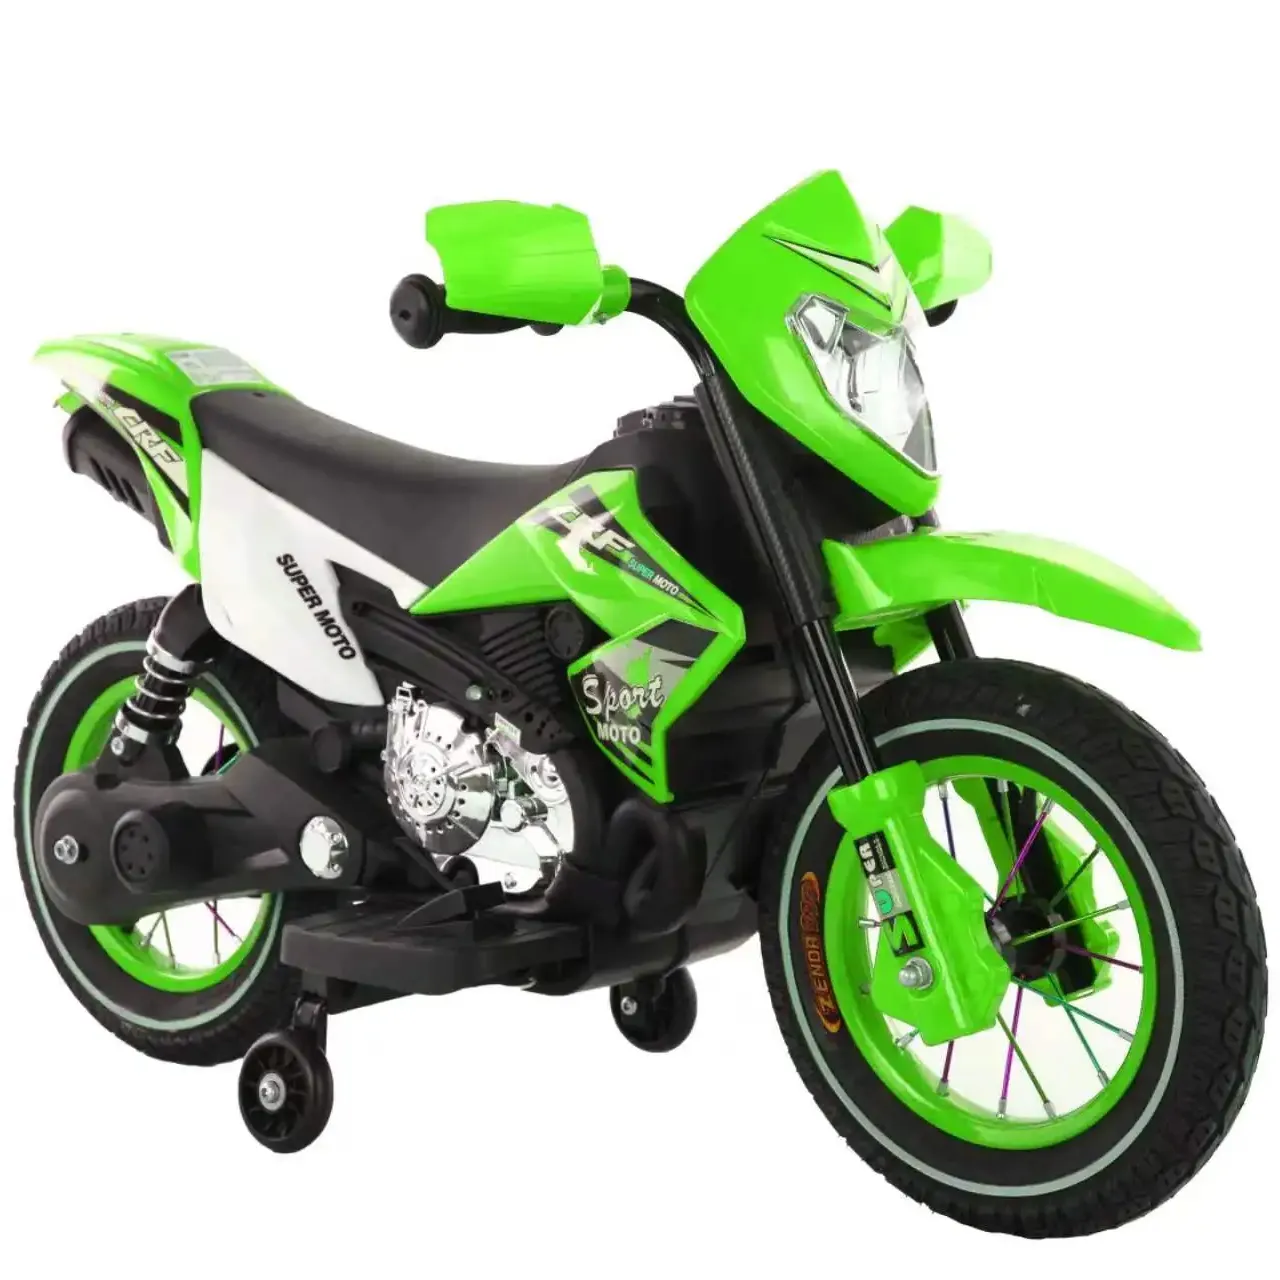 Sepeda motor listrik untuk anak laki-laki, mainan bayi warna hijau oranye putih empat warna